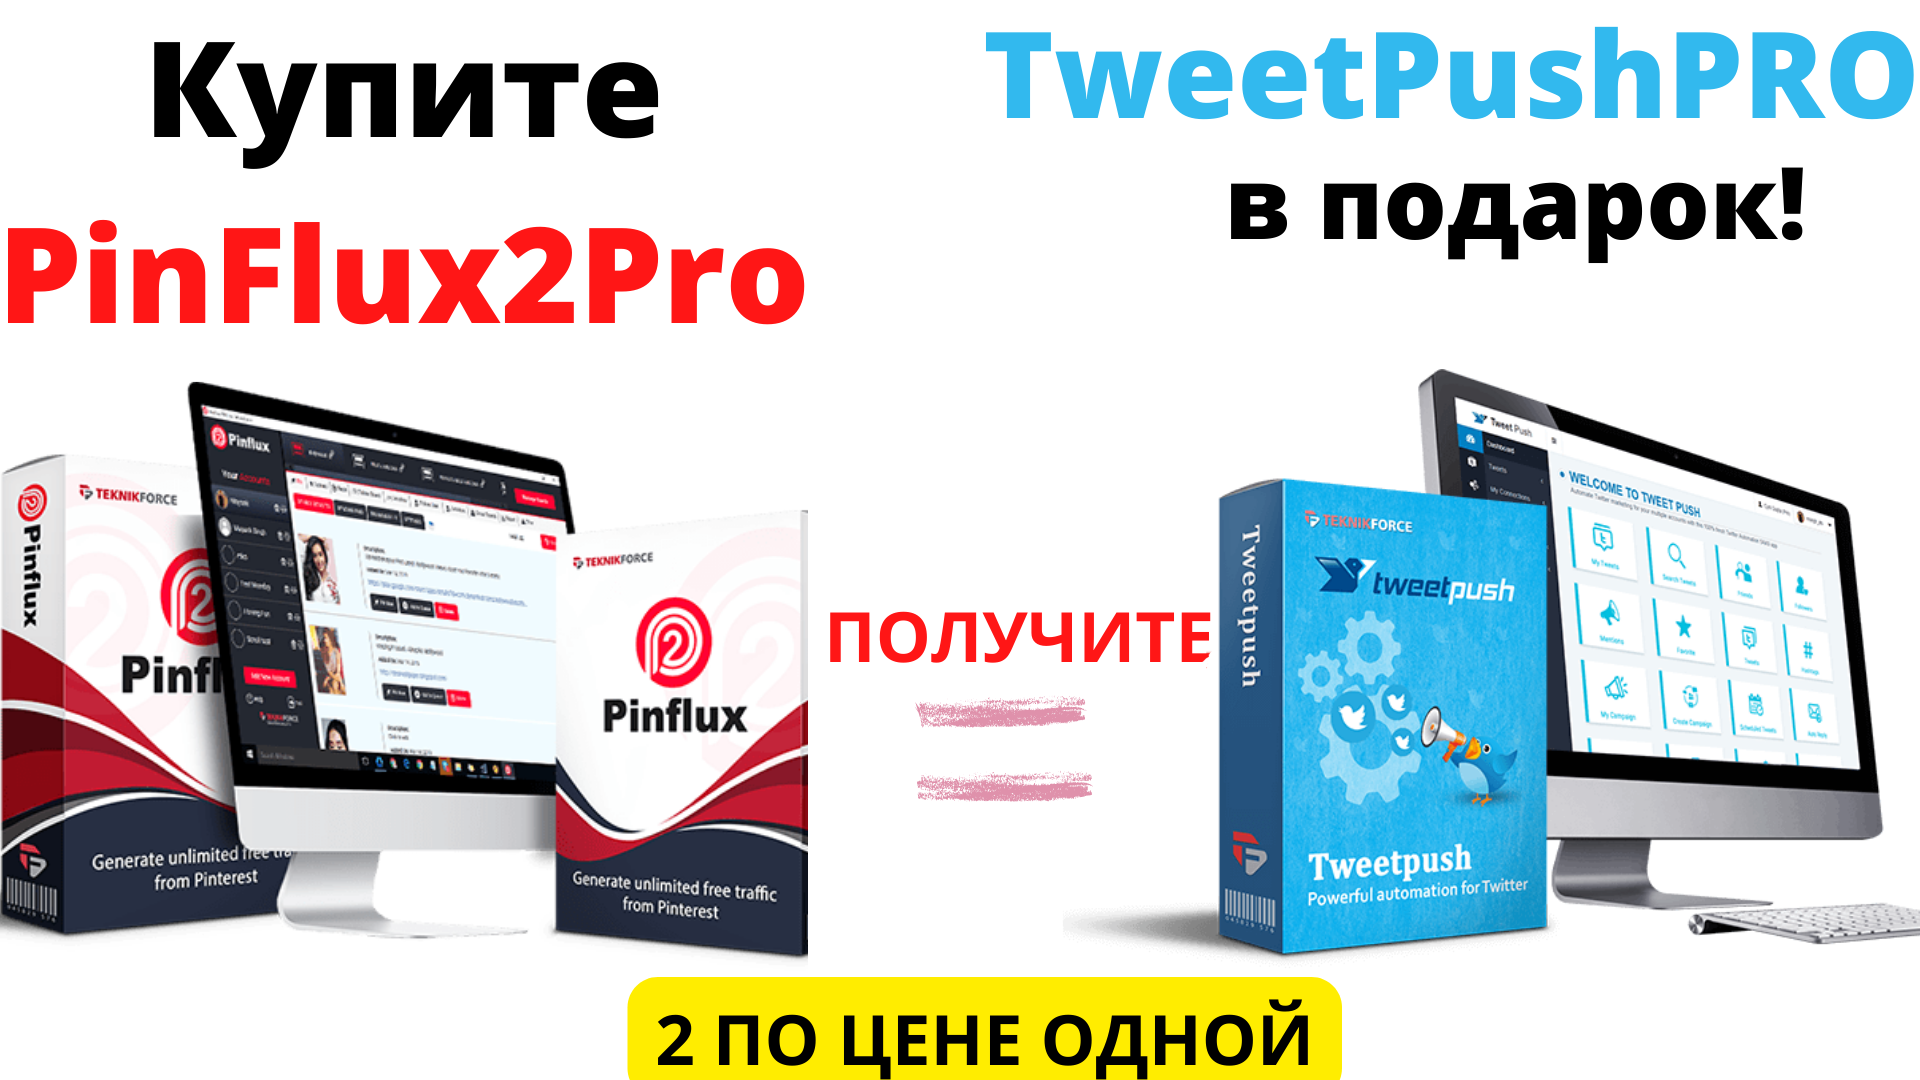 TweetPush PRO (1).png